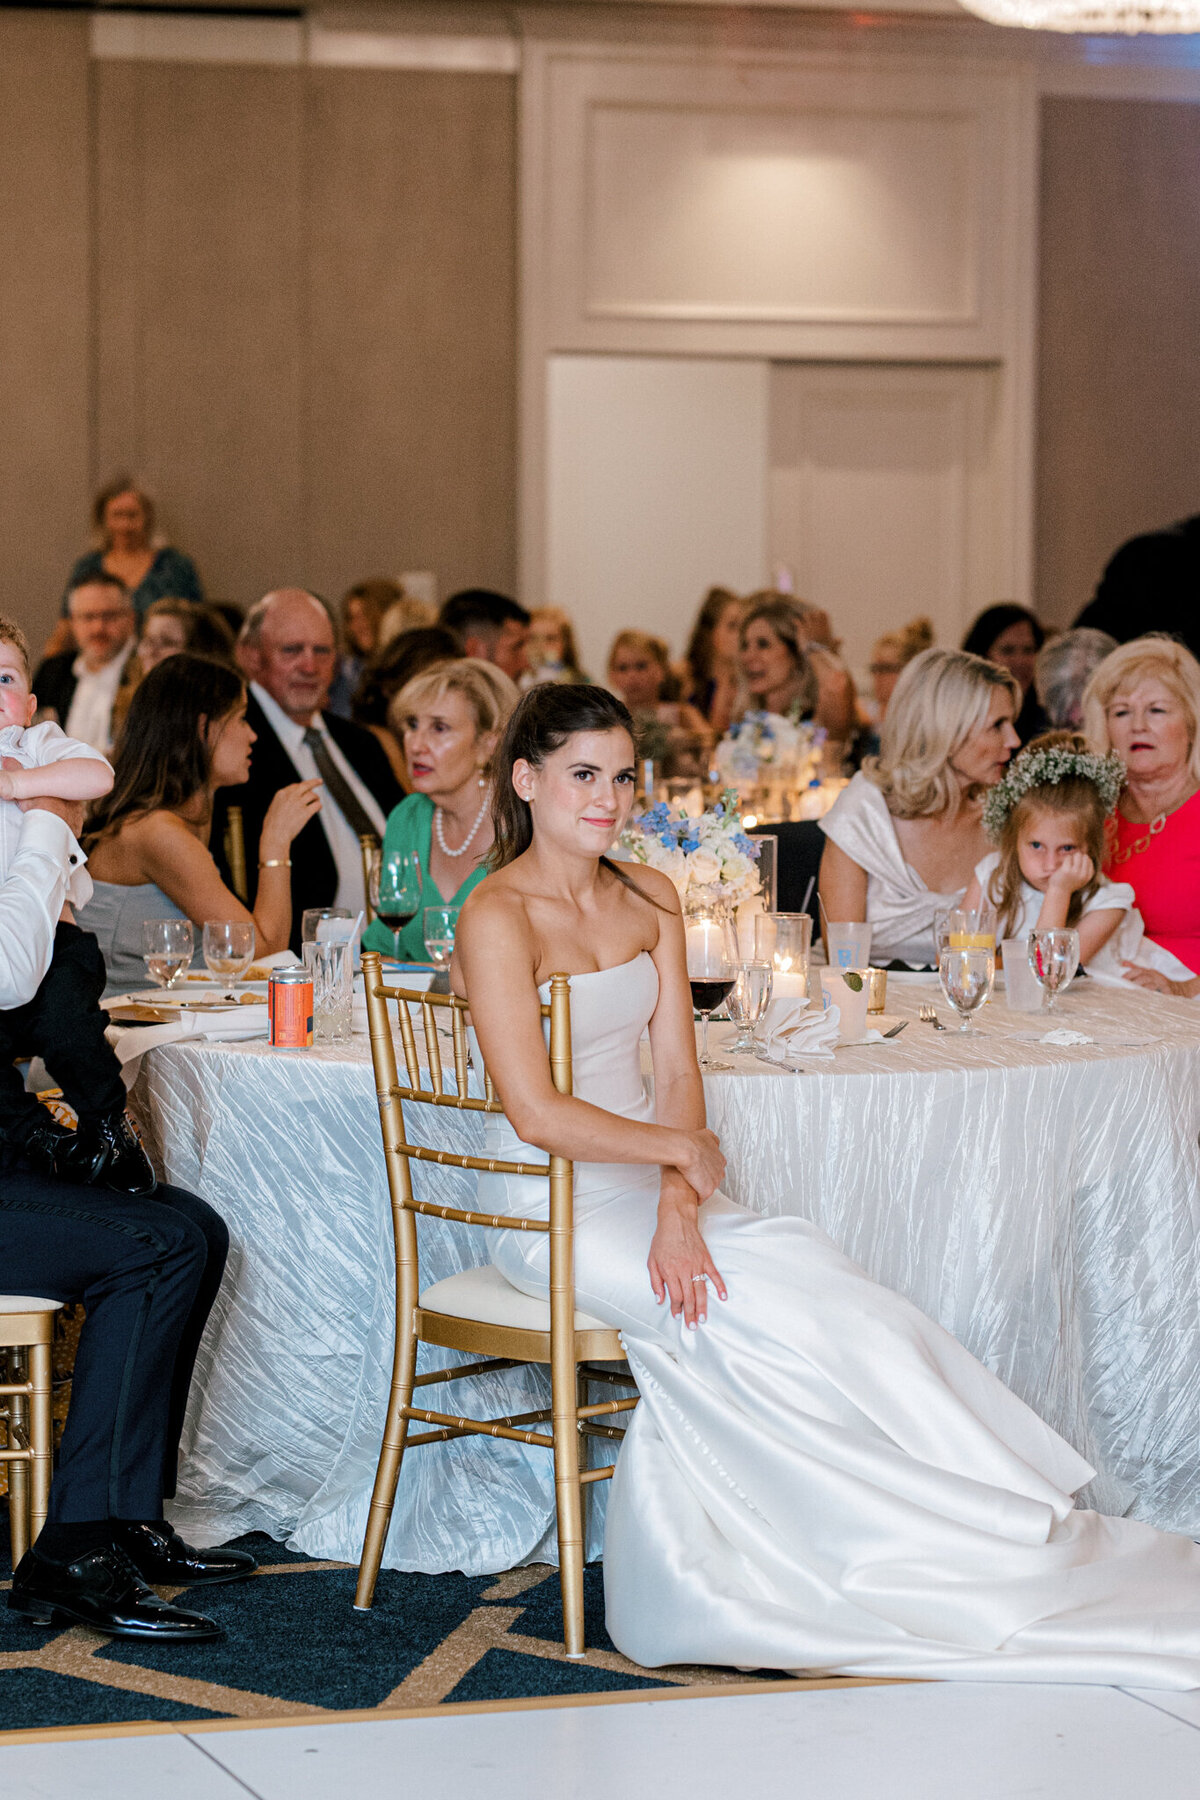 Annie & Logan's Wedding | Dallas Wedding Photographer | Sami Kathryn Photography-228